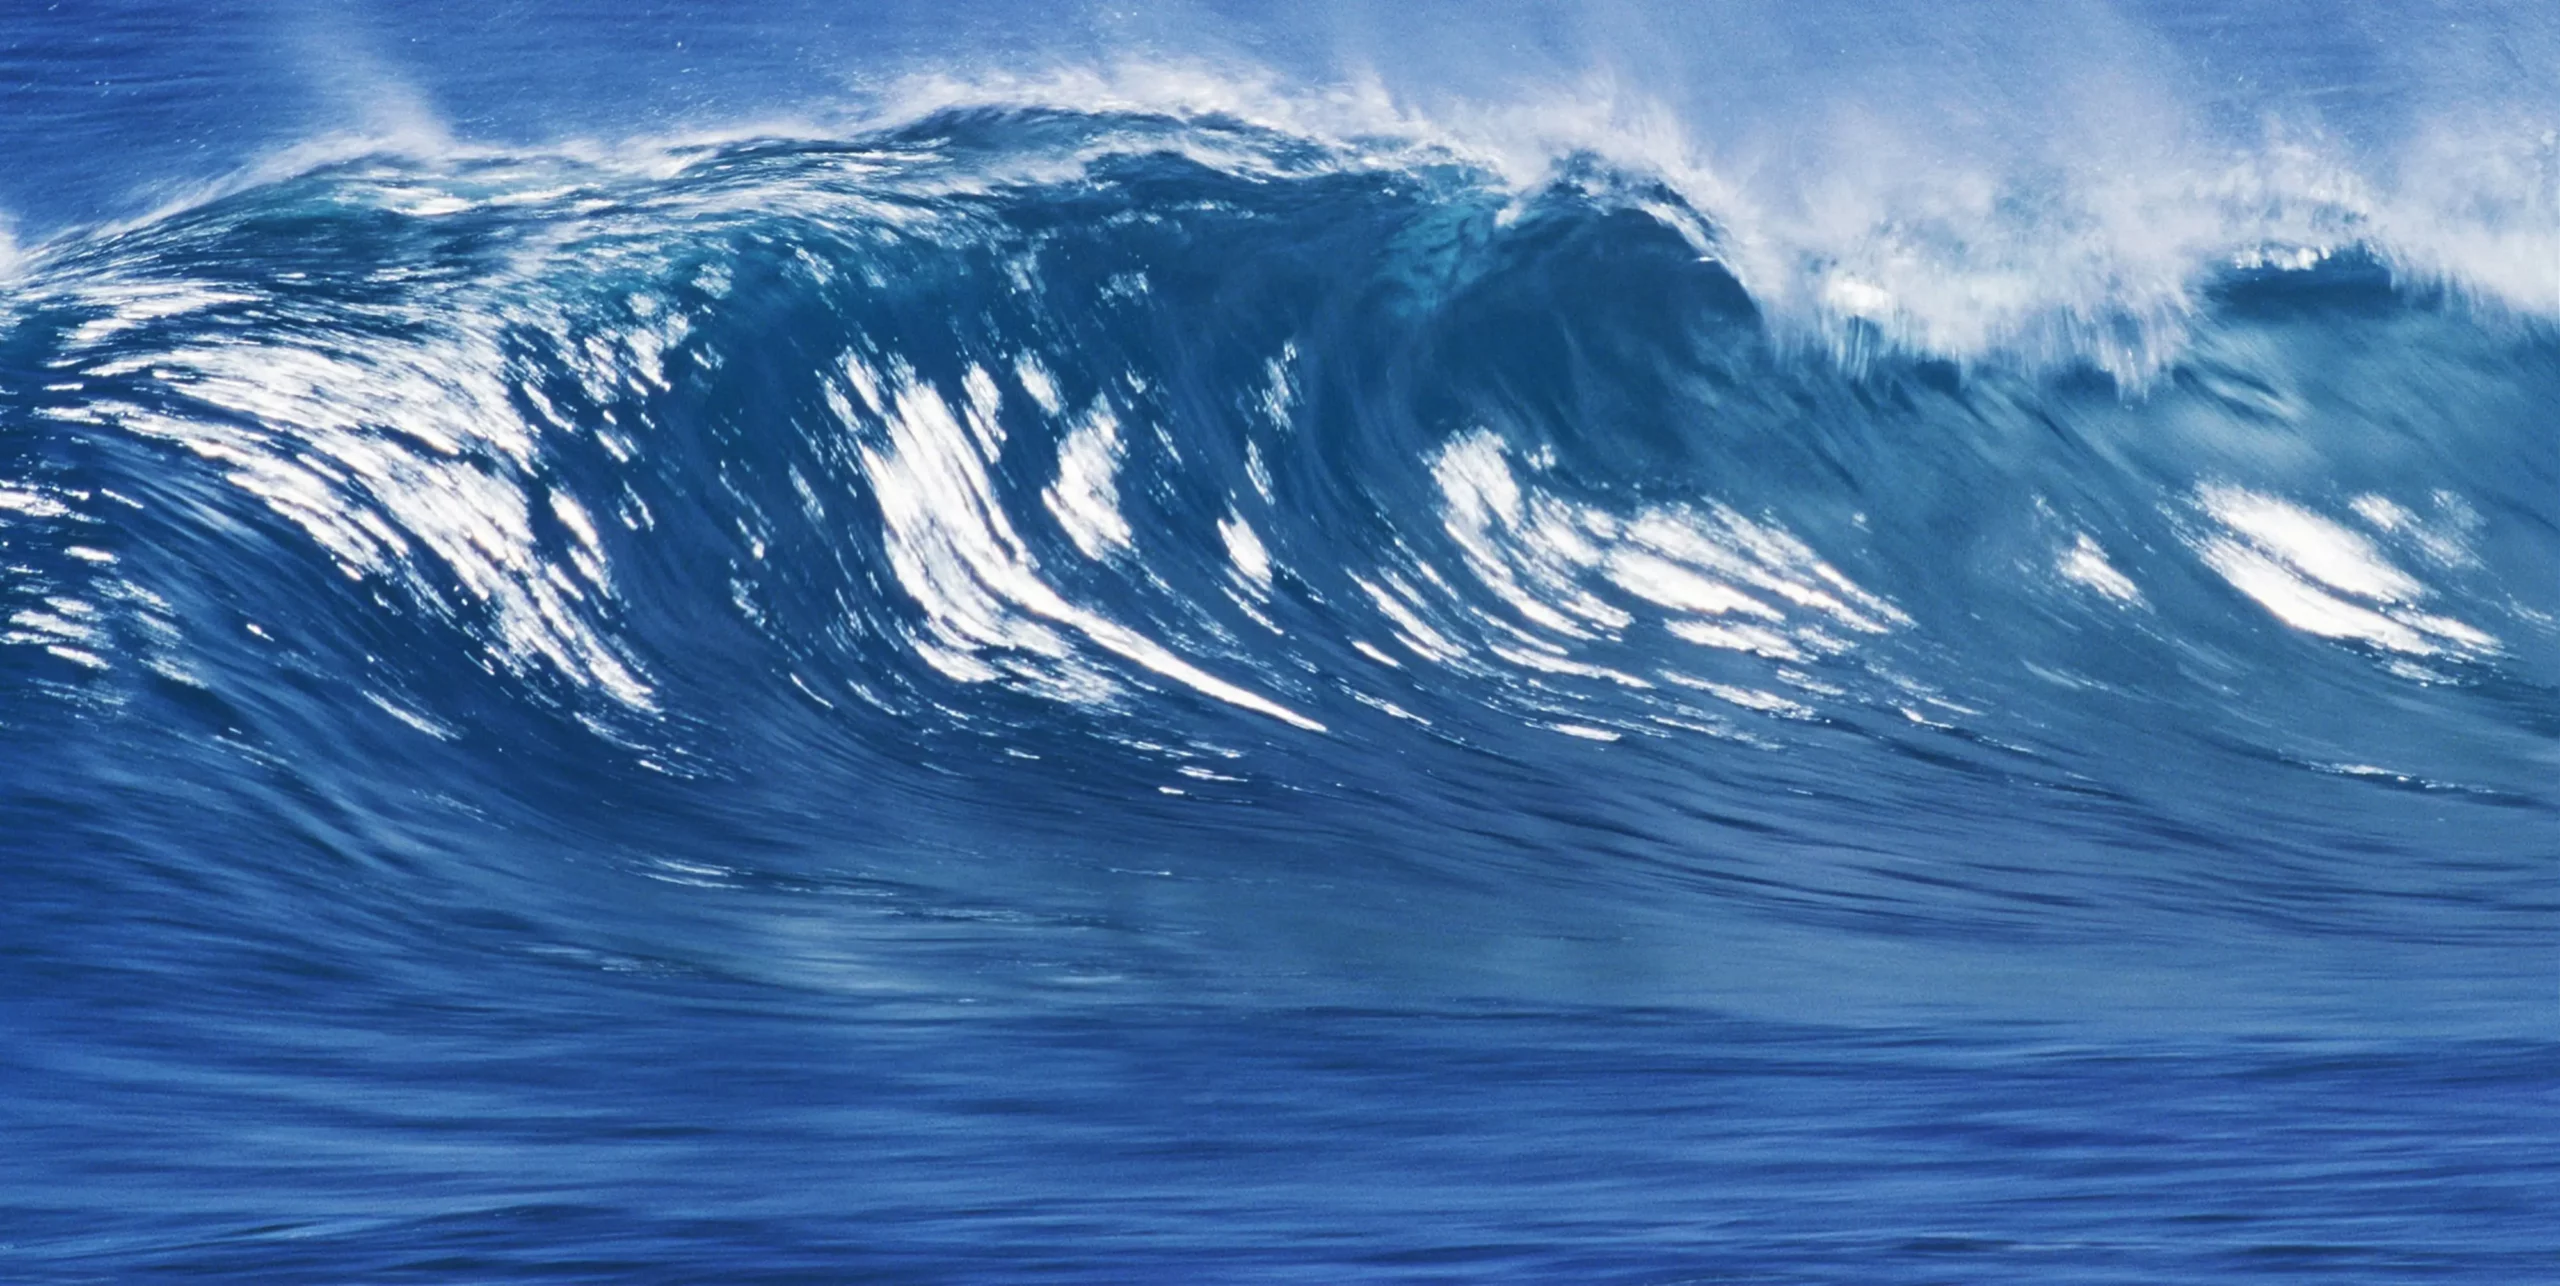 big-blue-surfing-wave-breaks-in-ocean-2022-10-08-00-29-01-utc-min